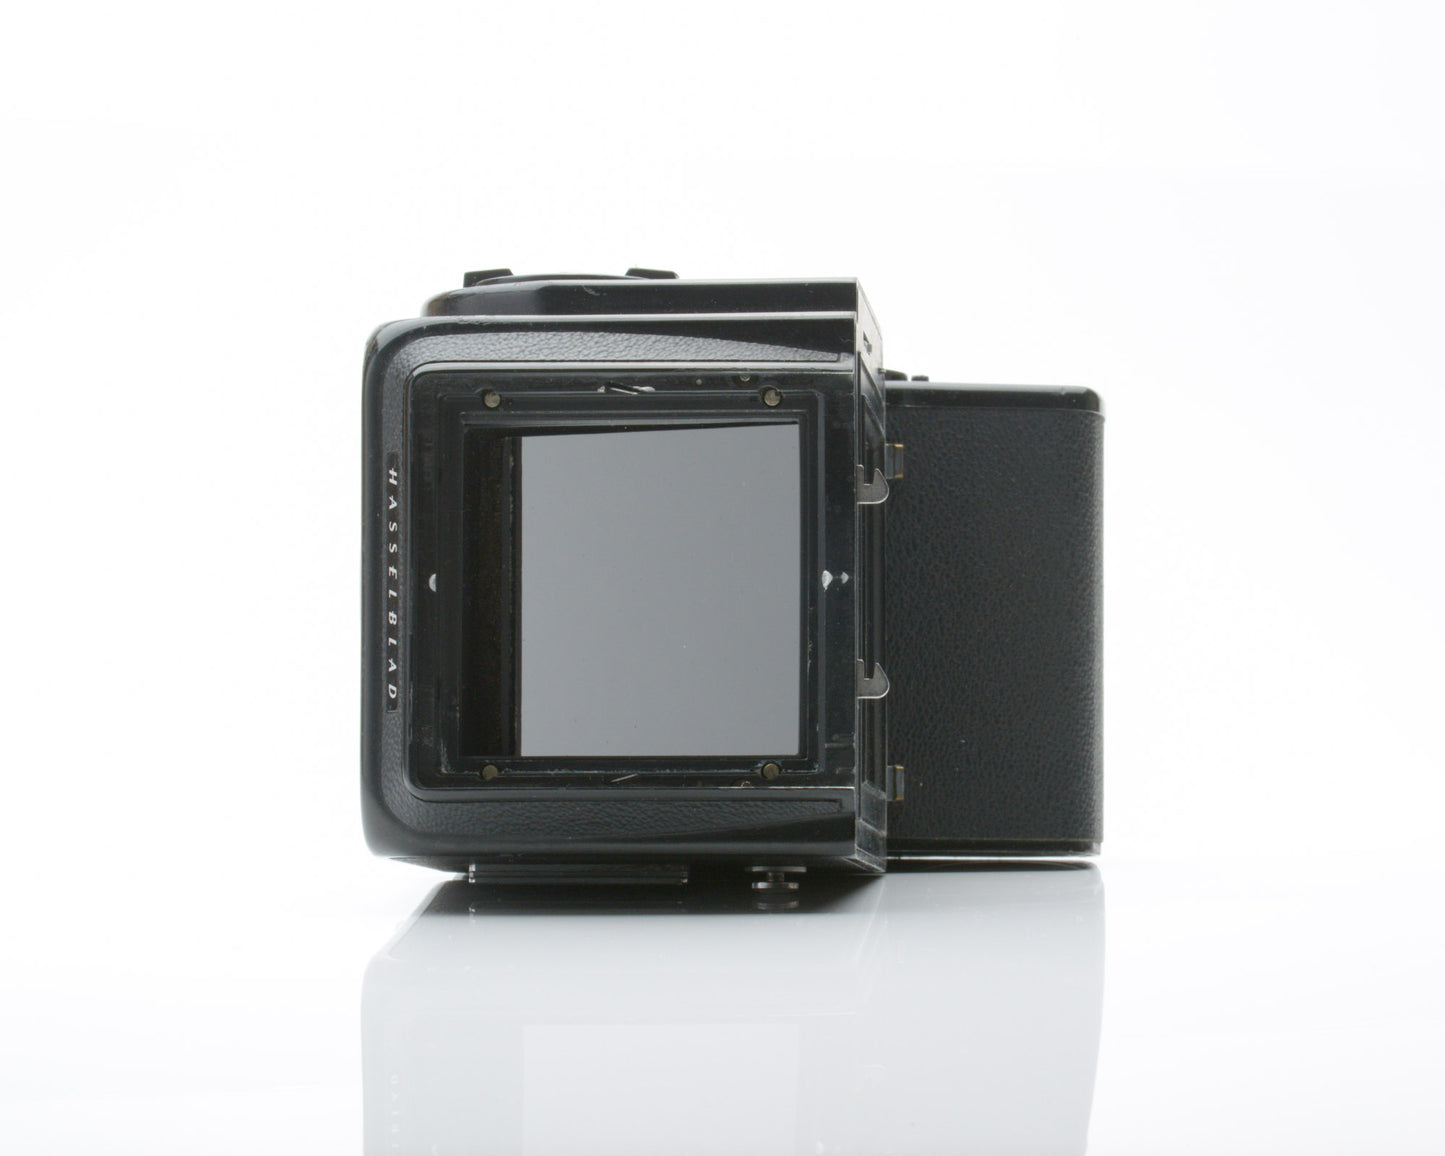 Hasselblad 500 EL/m 6x6 Medium Format Camera Body for Parts or Repair